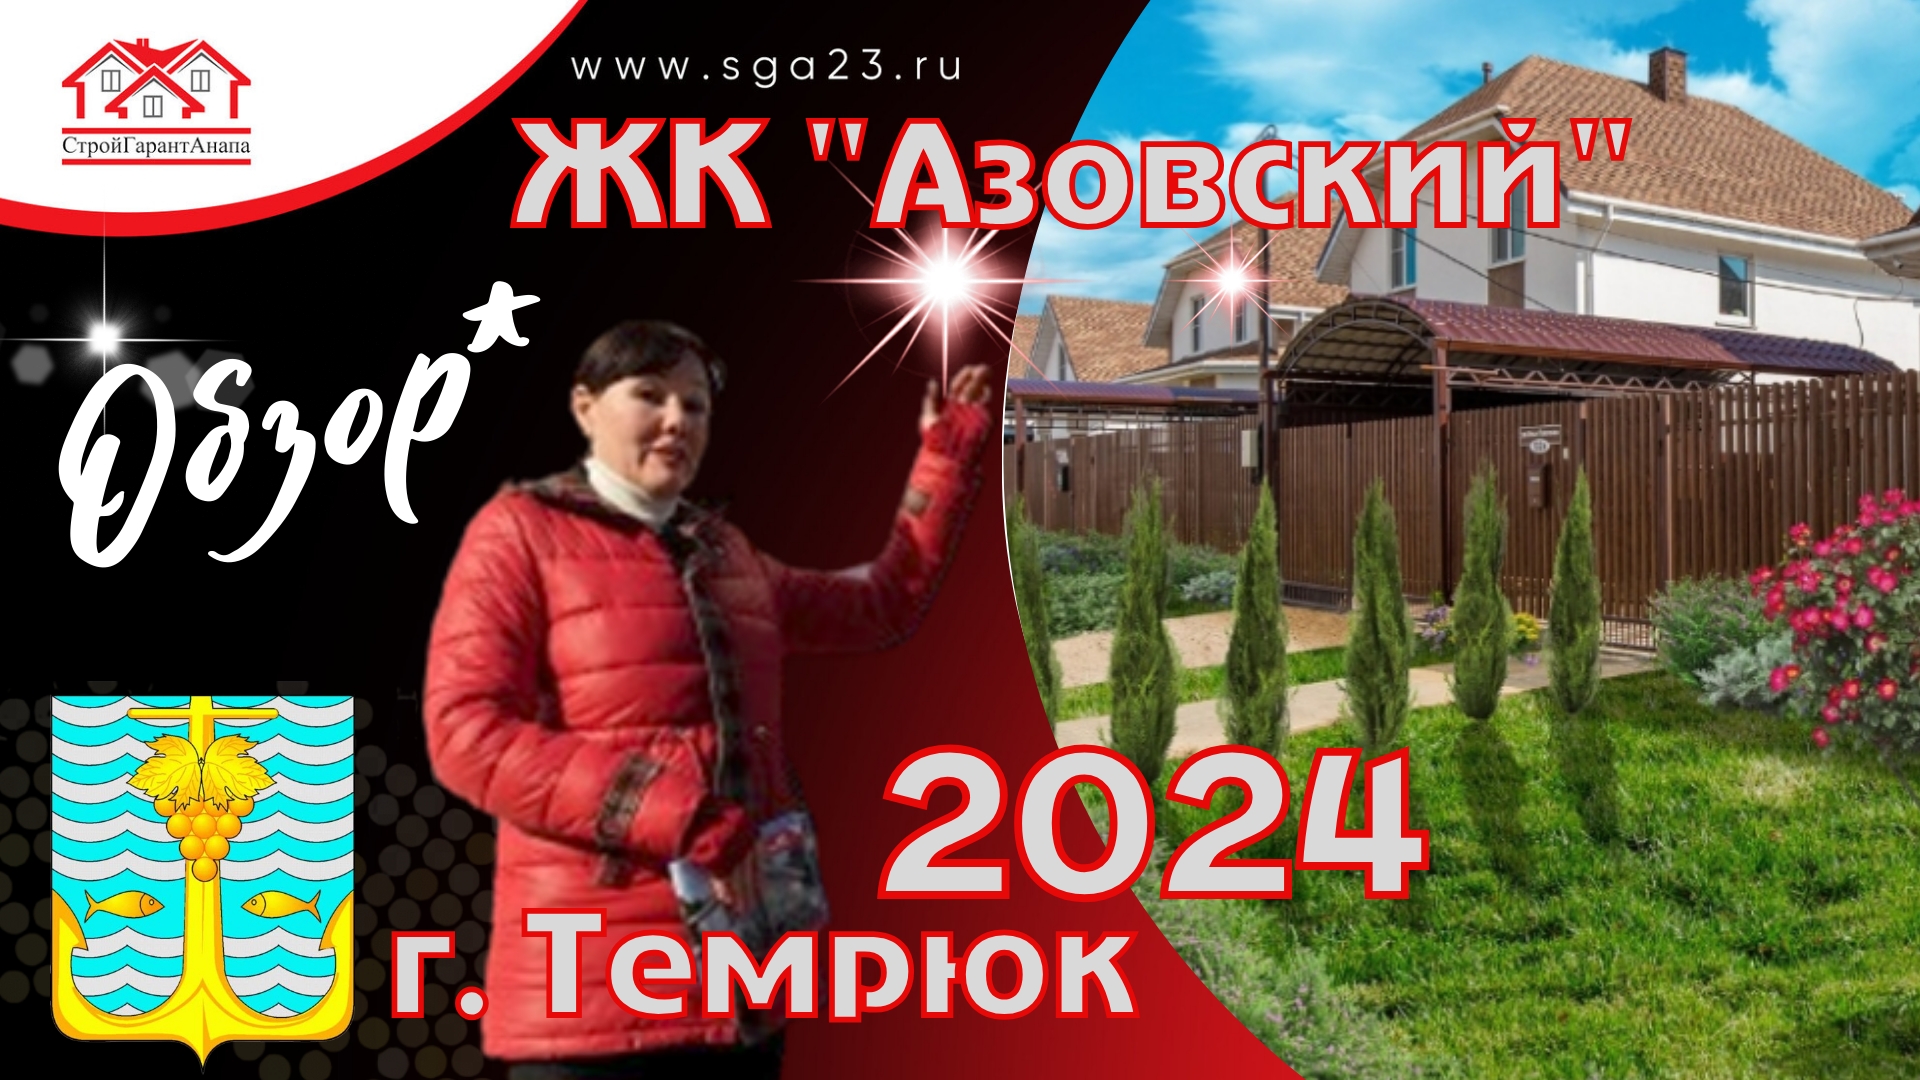 ЖК "АЗОВСКИЙ" обзор 2024 год. Новости.